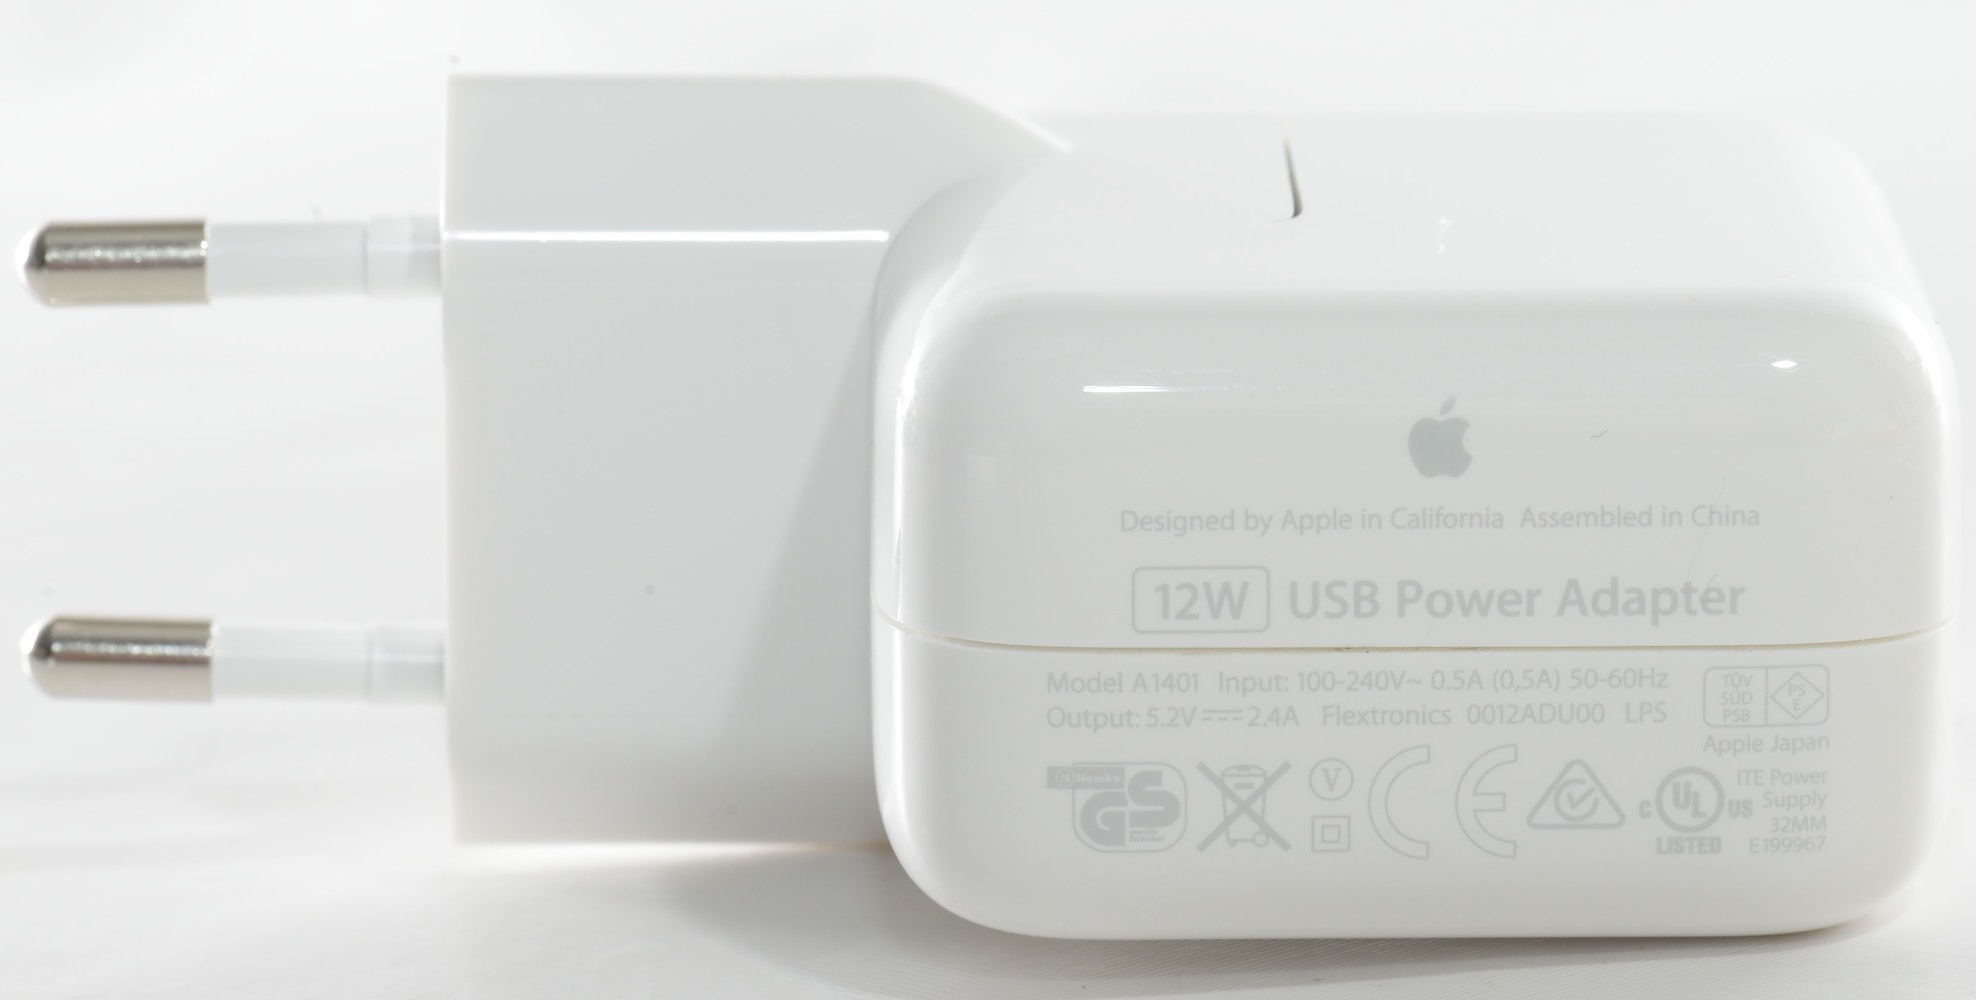 Test/Review of Apple 12W USB power adapter model A1401 |  BudgetLightForum.com